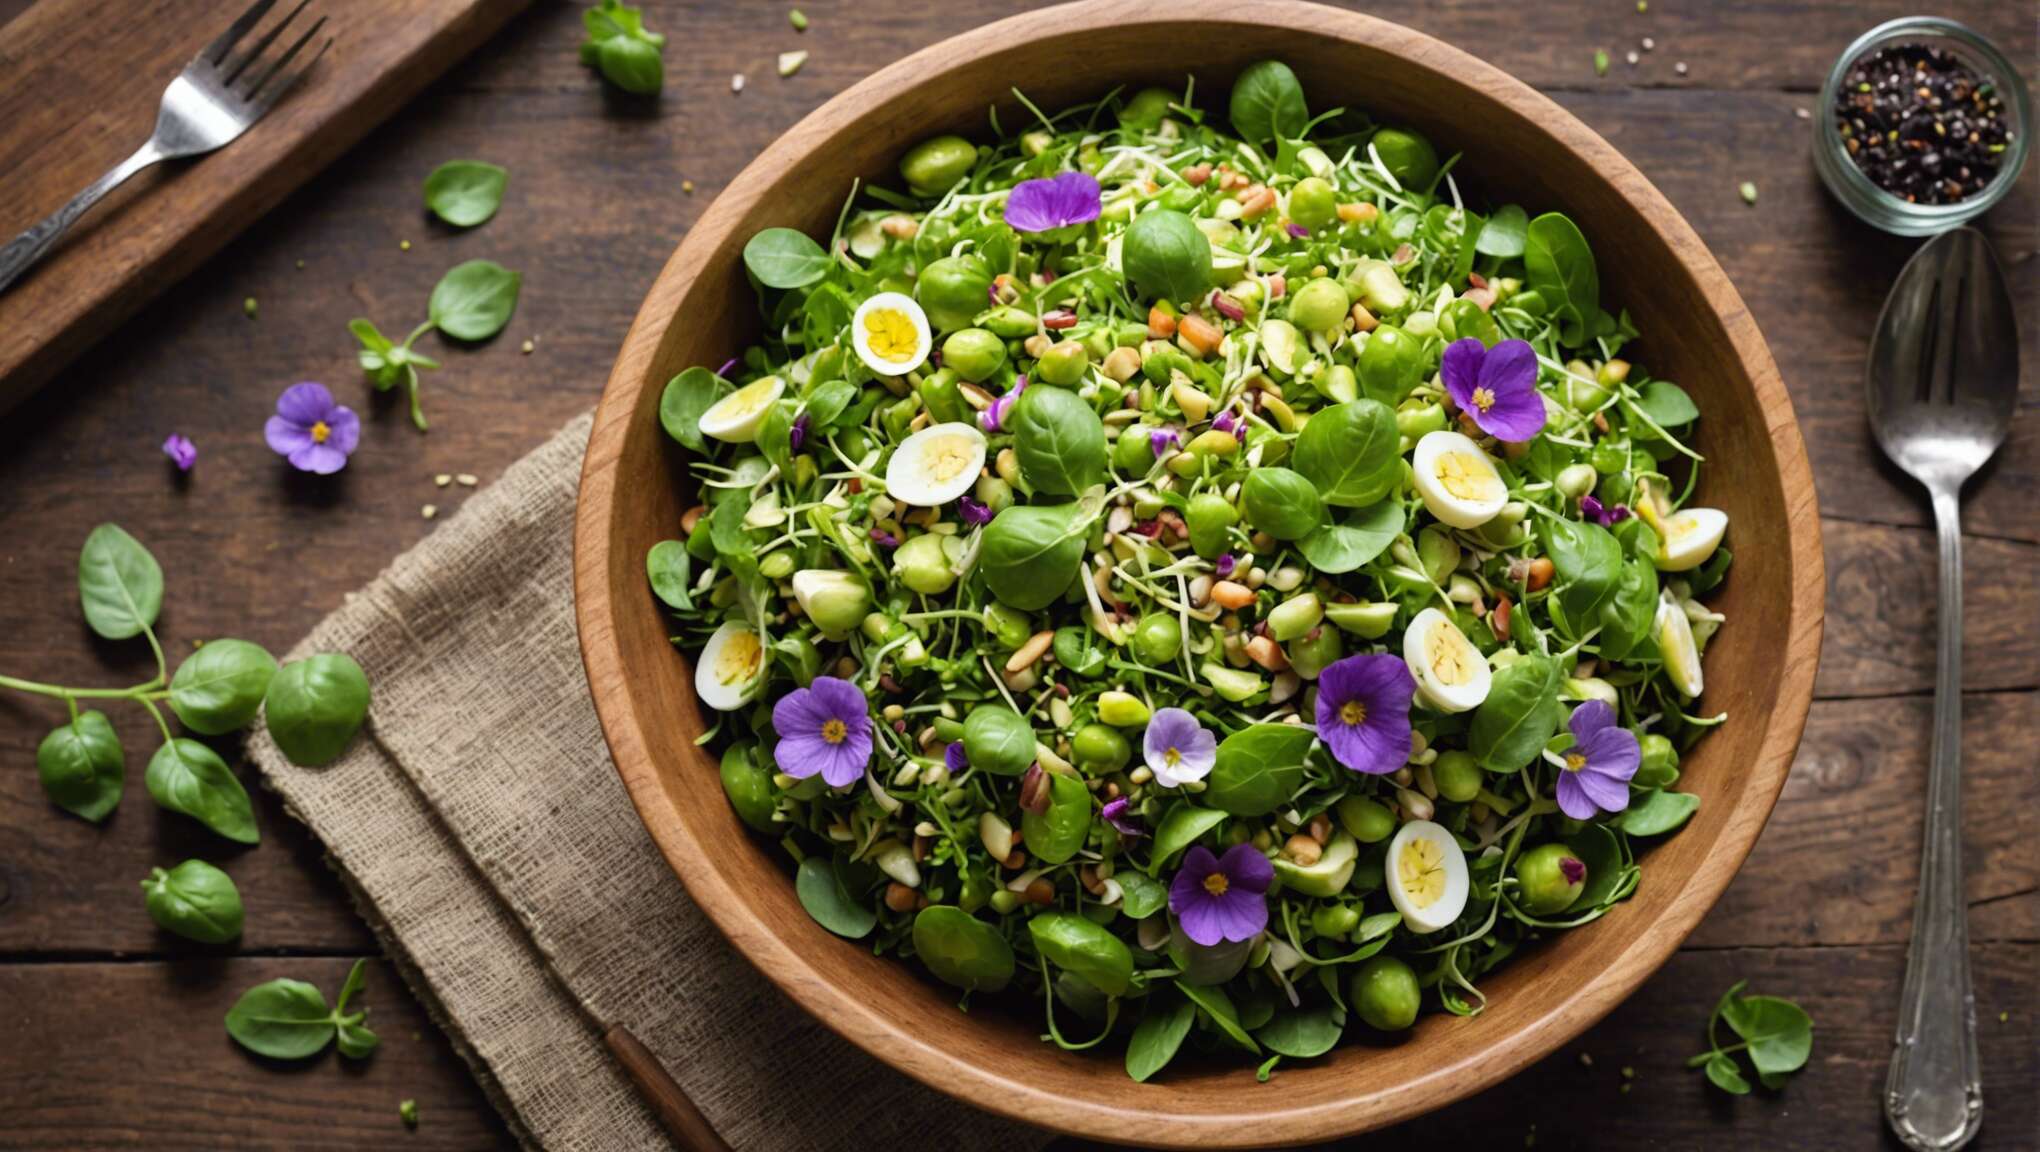 Les graines en salade : l'art d'associer saveurs et bienfaits